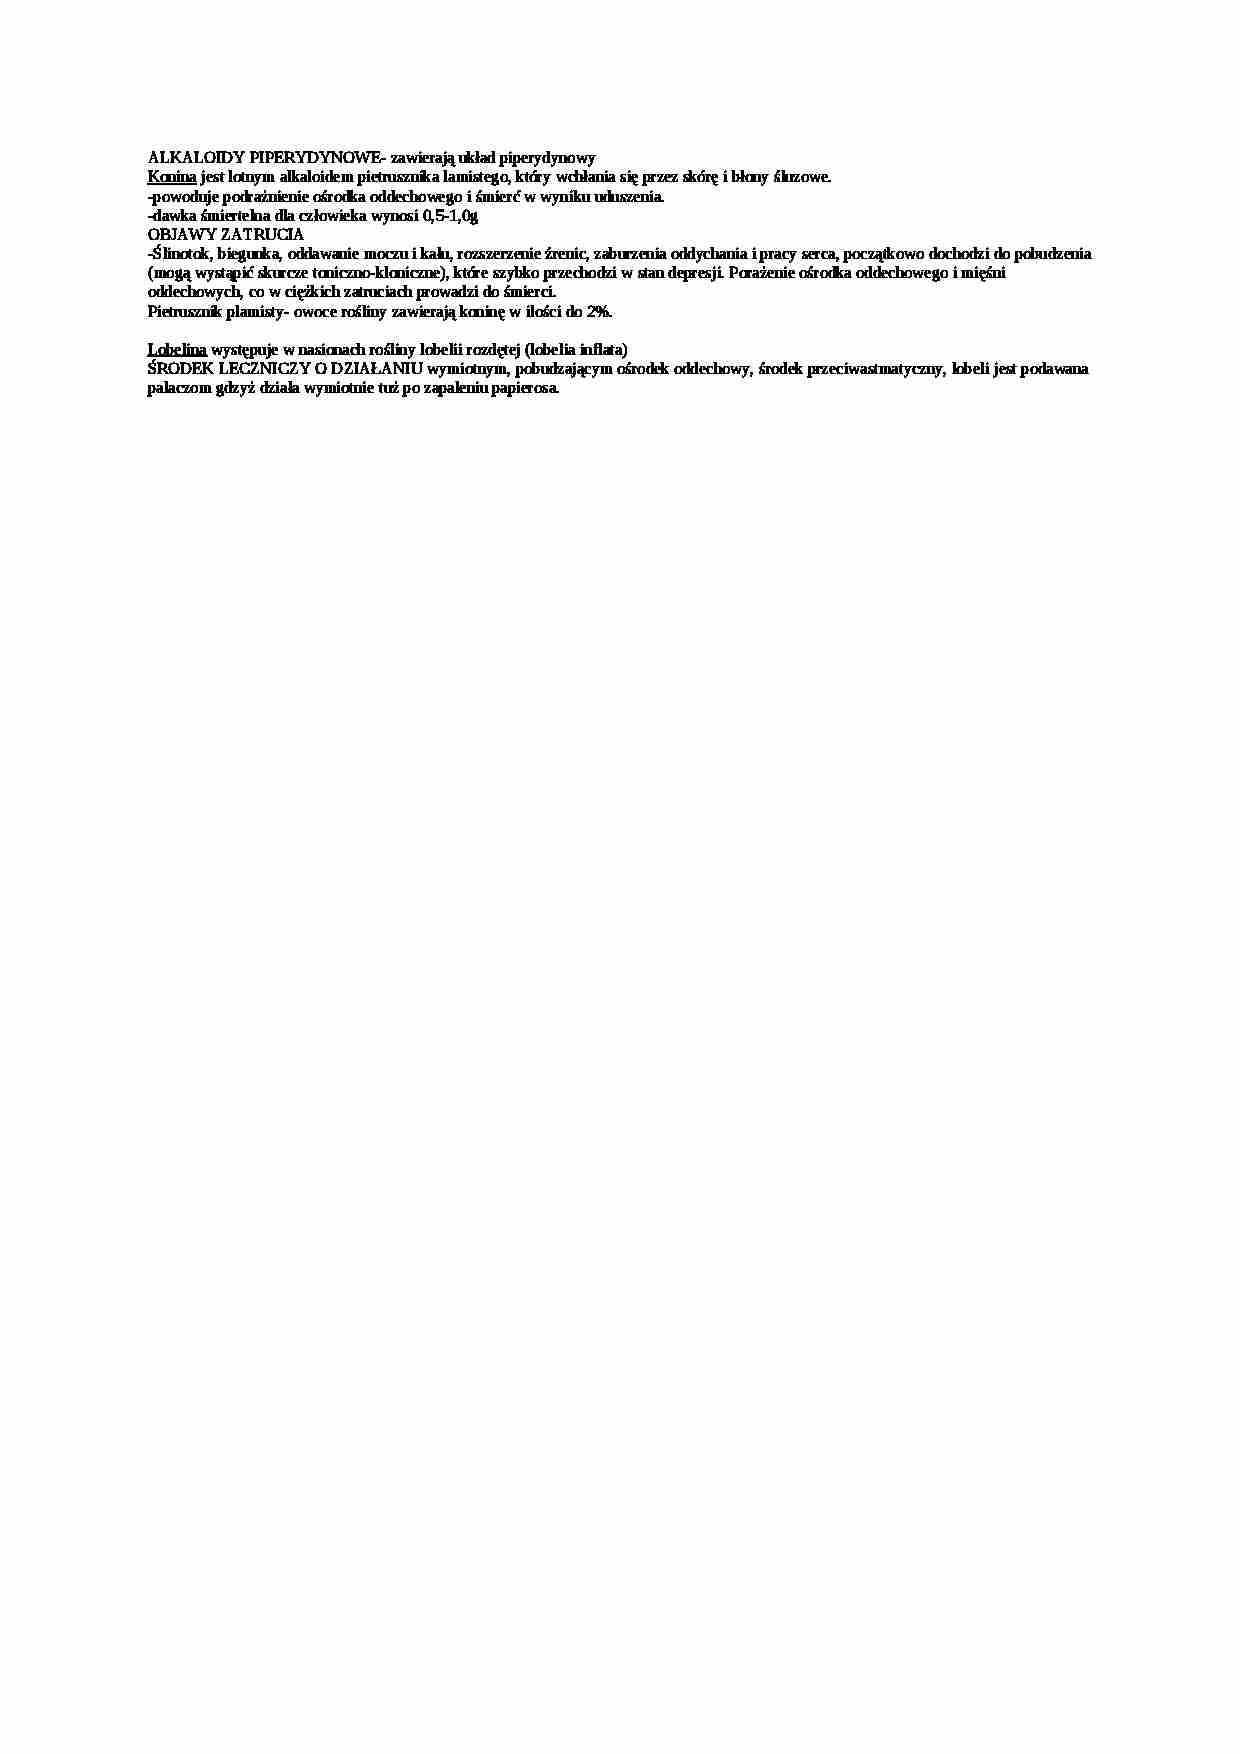 Opracowanie - alkaloidy piperydynowe - strona 1